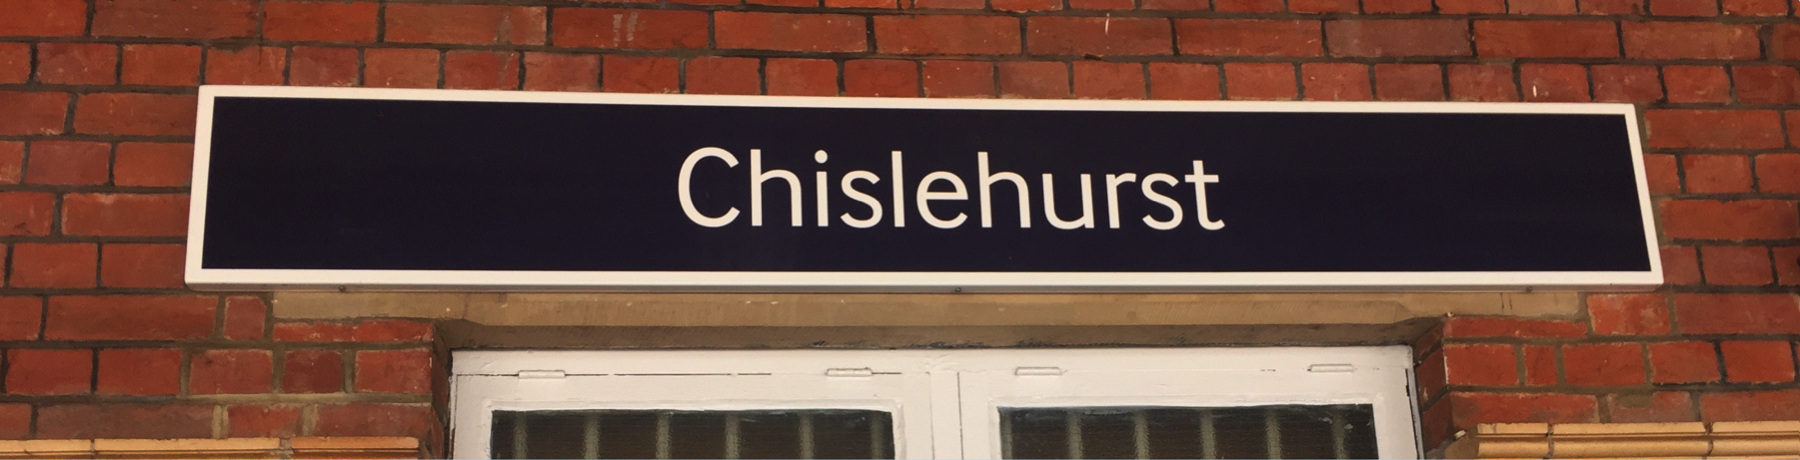 Chislehurst